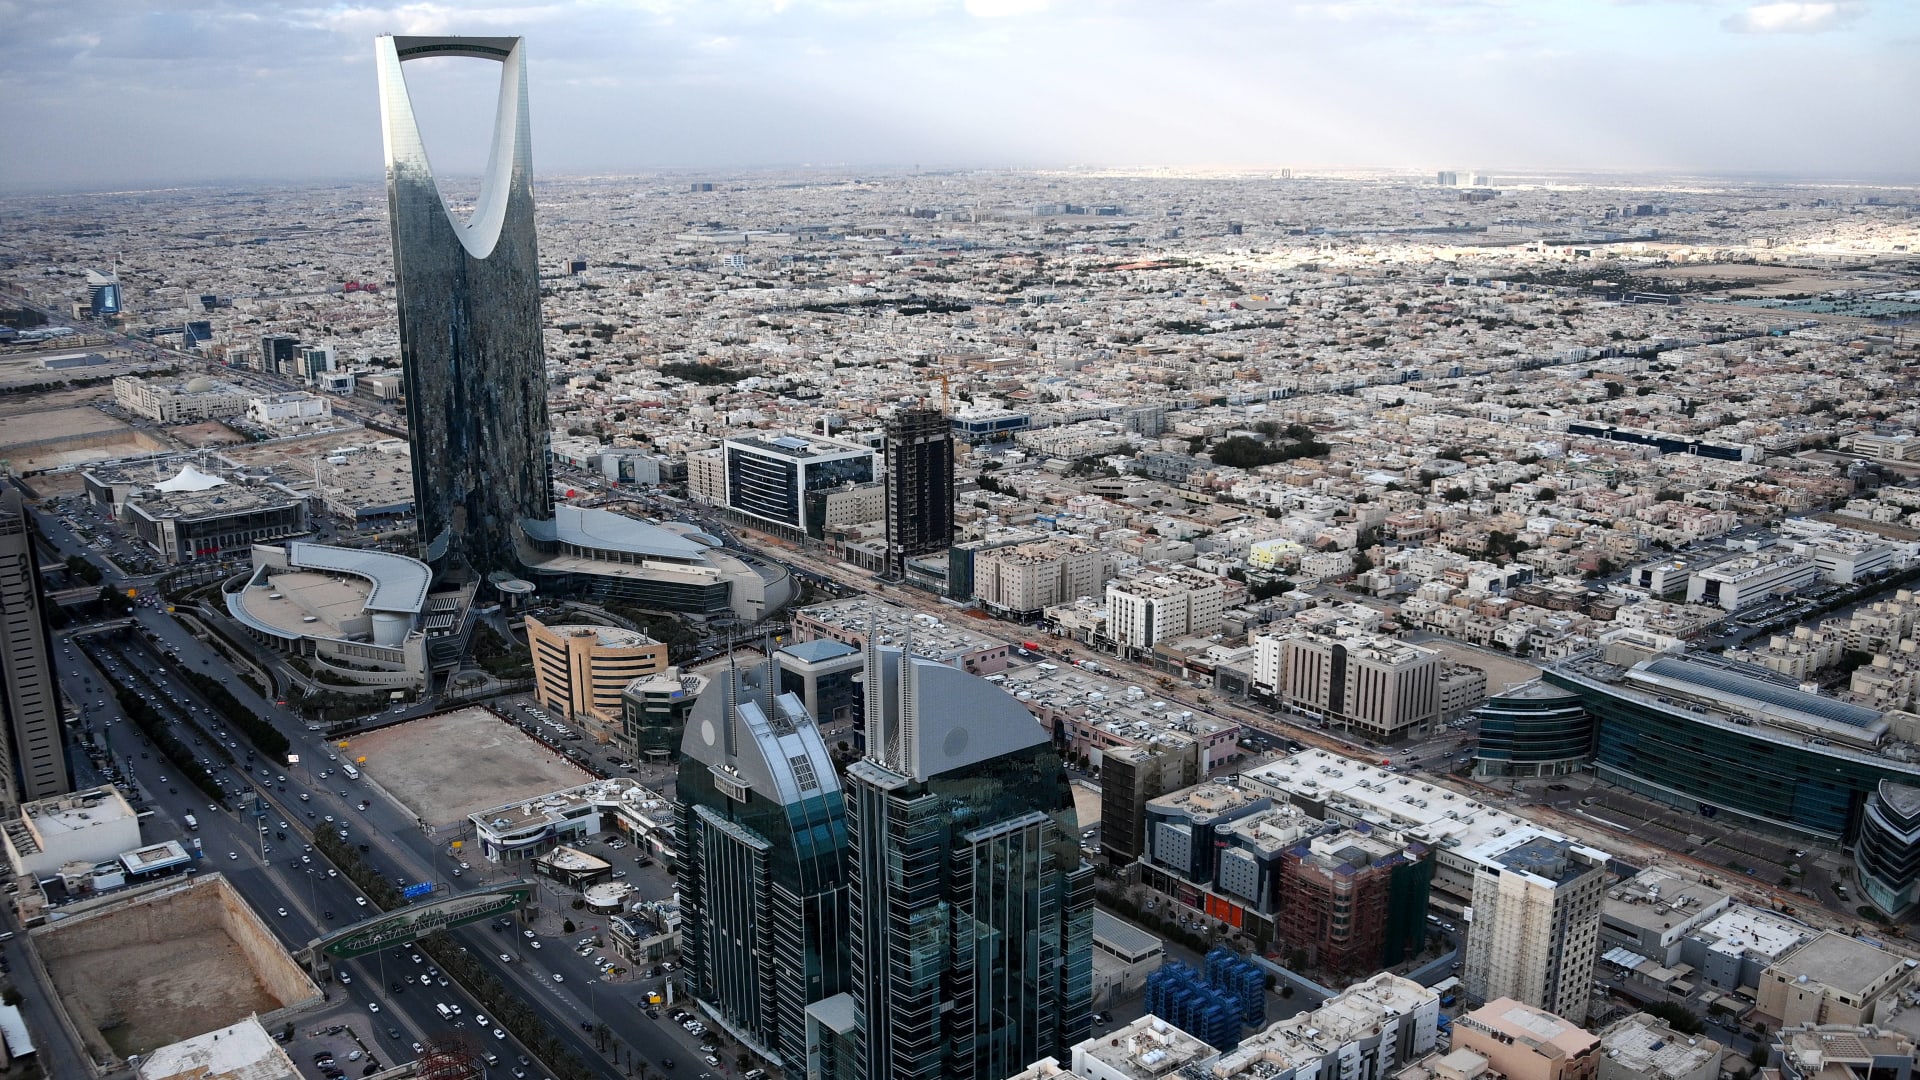 السعودية.. تداول فيديو اعتداء على موظف في الرياض وتفاعل على تحرك الأمن العام